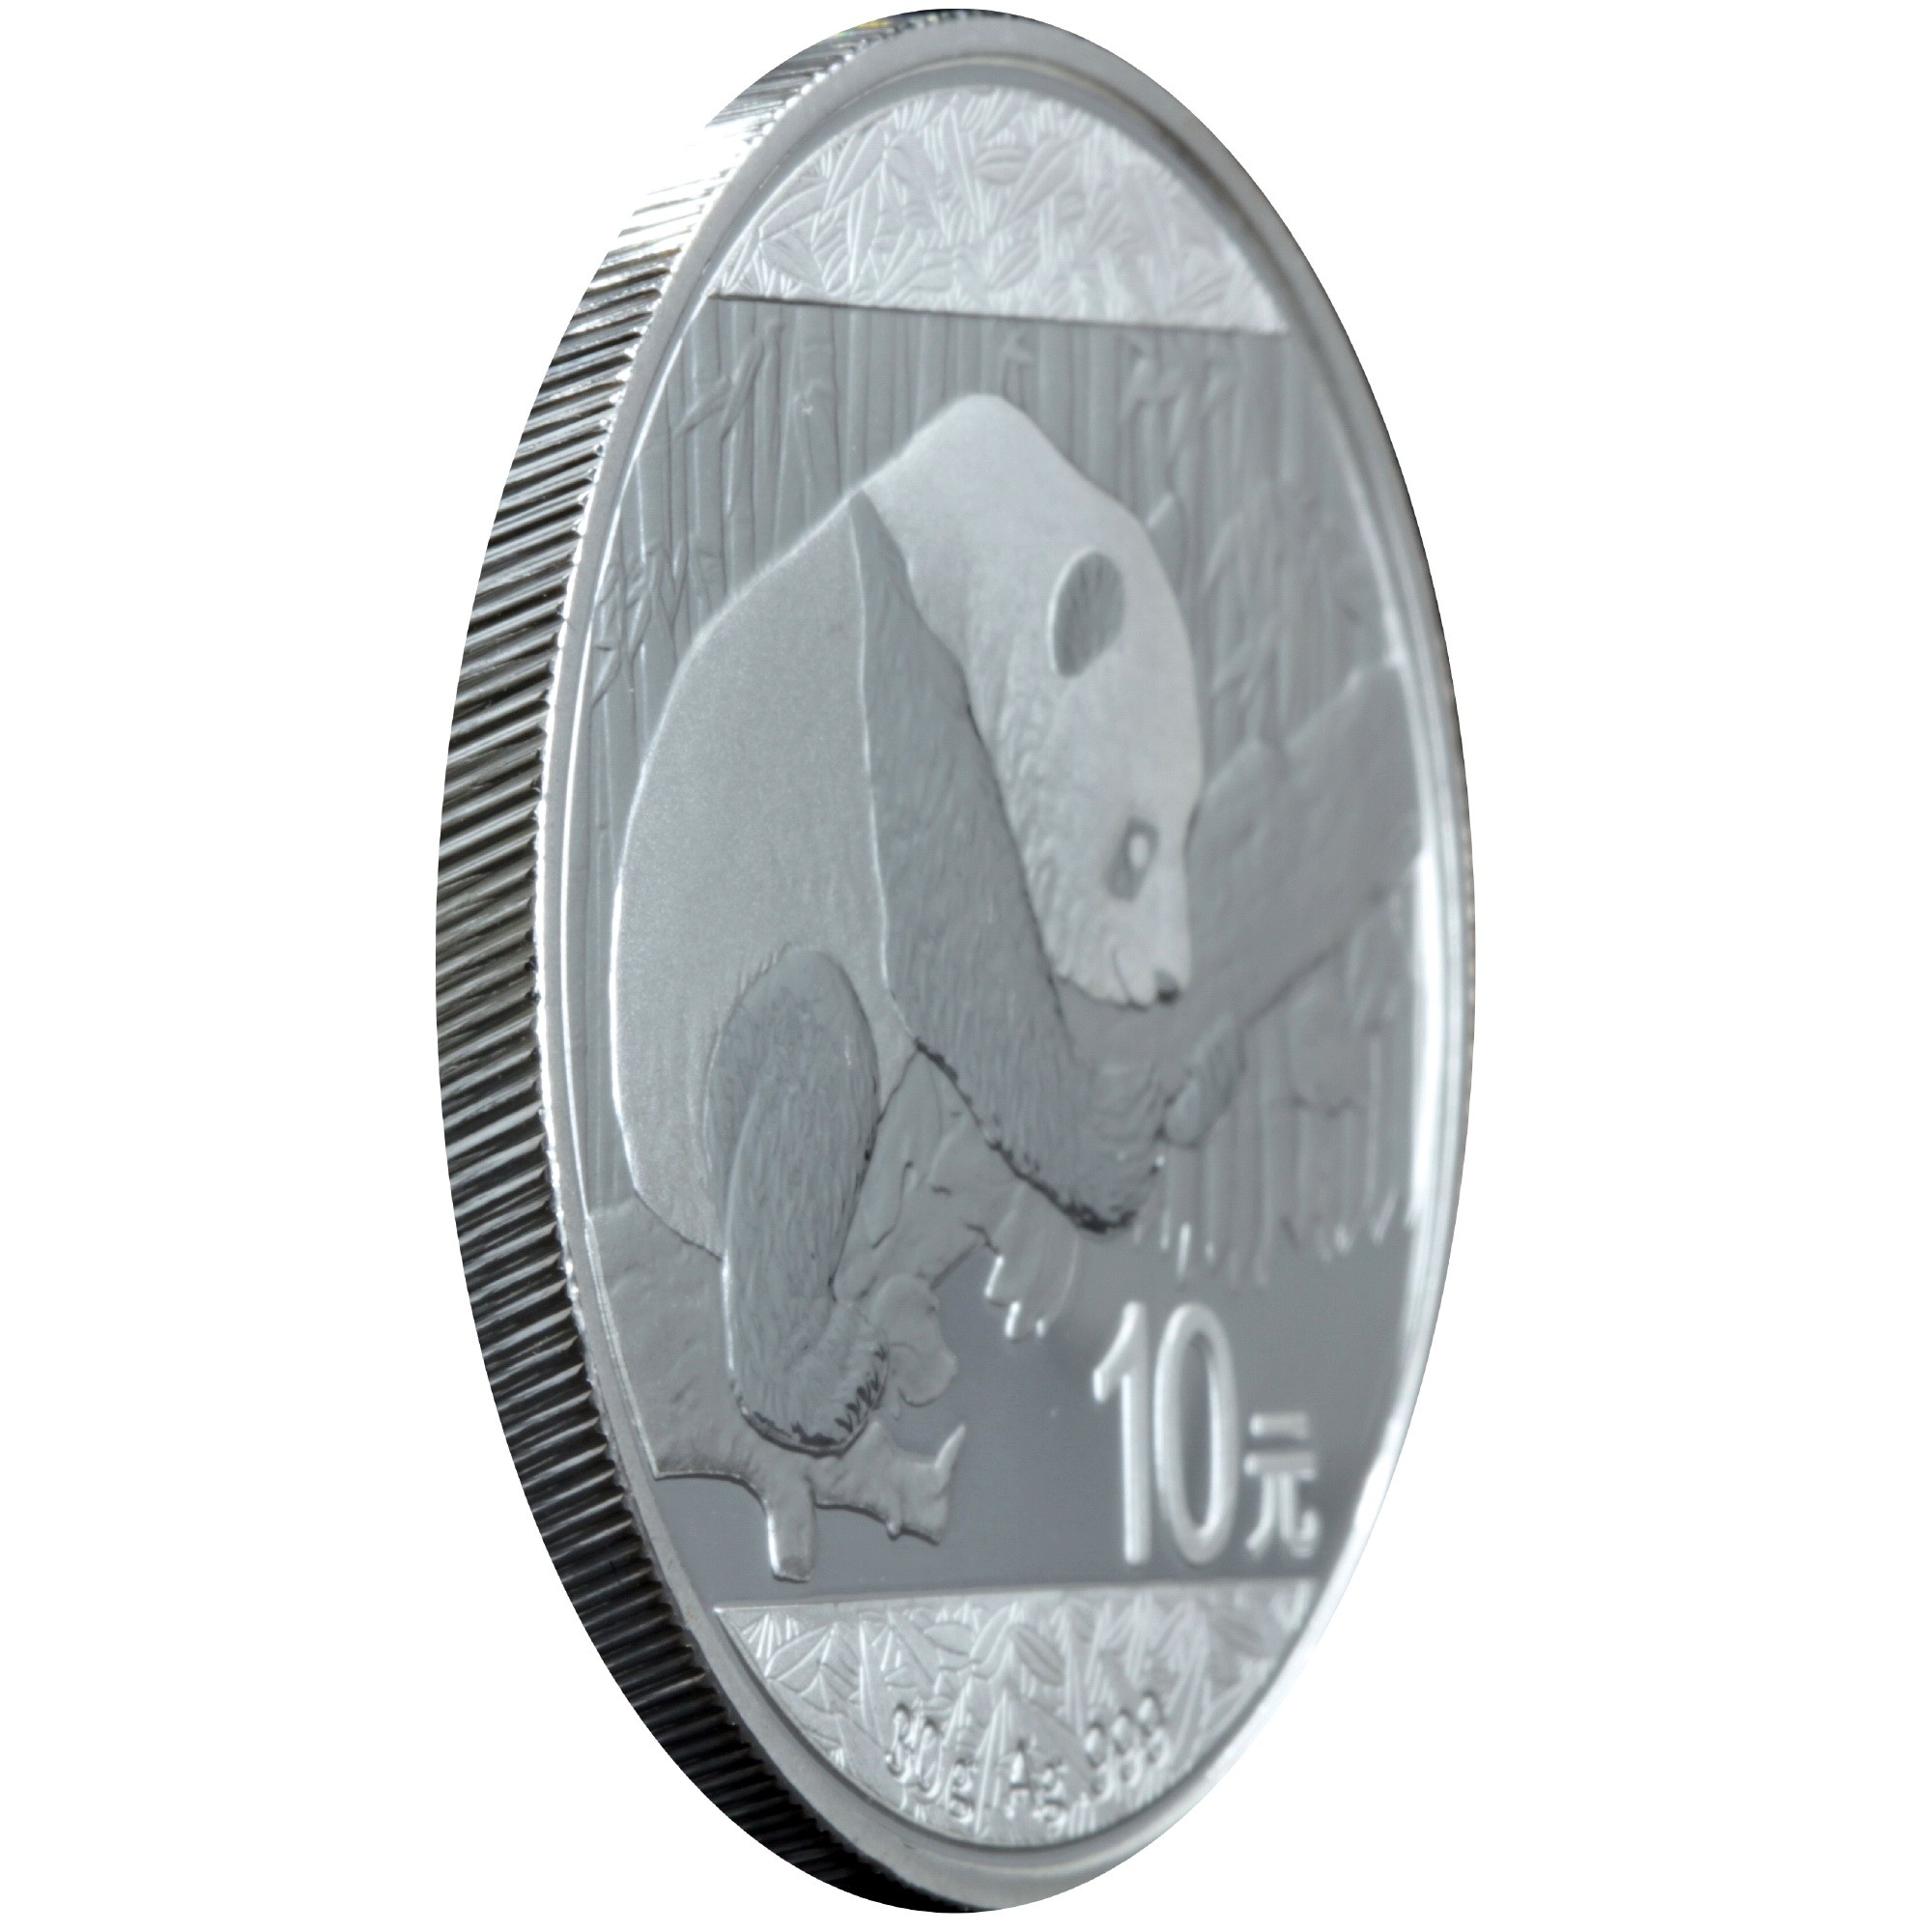 Серебряная монета 30g Китайская Панда 10 юань 2016 Китай (29127514) 2